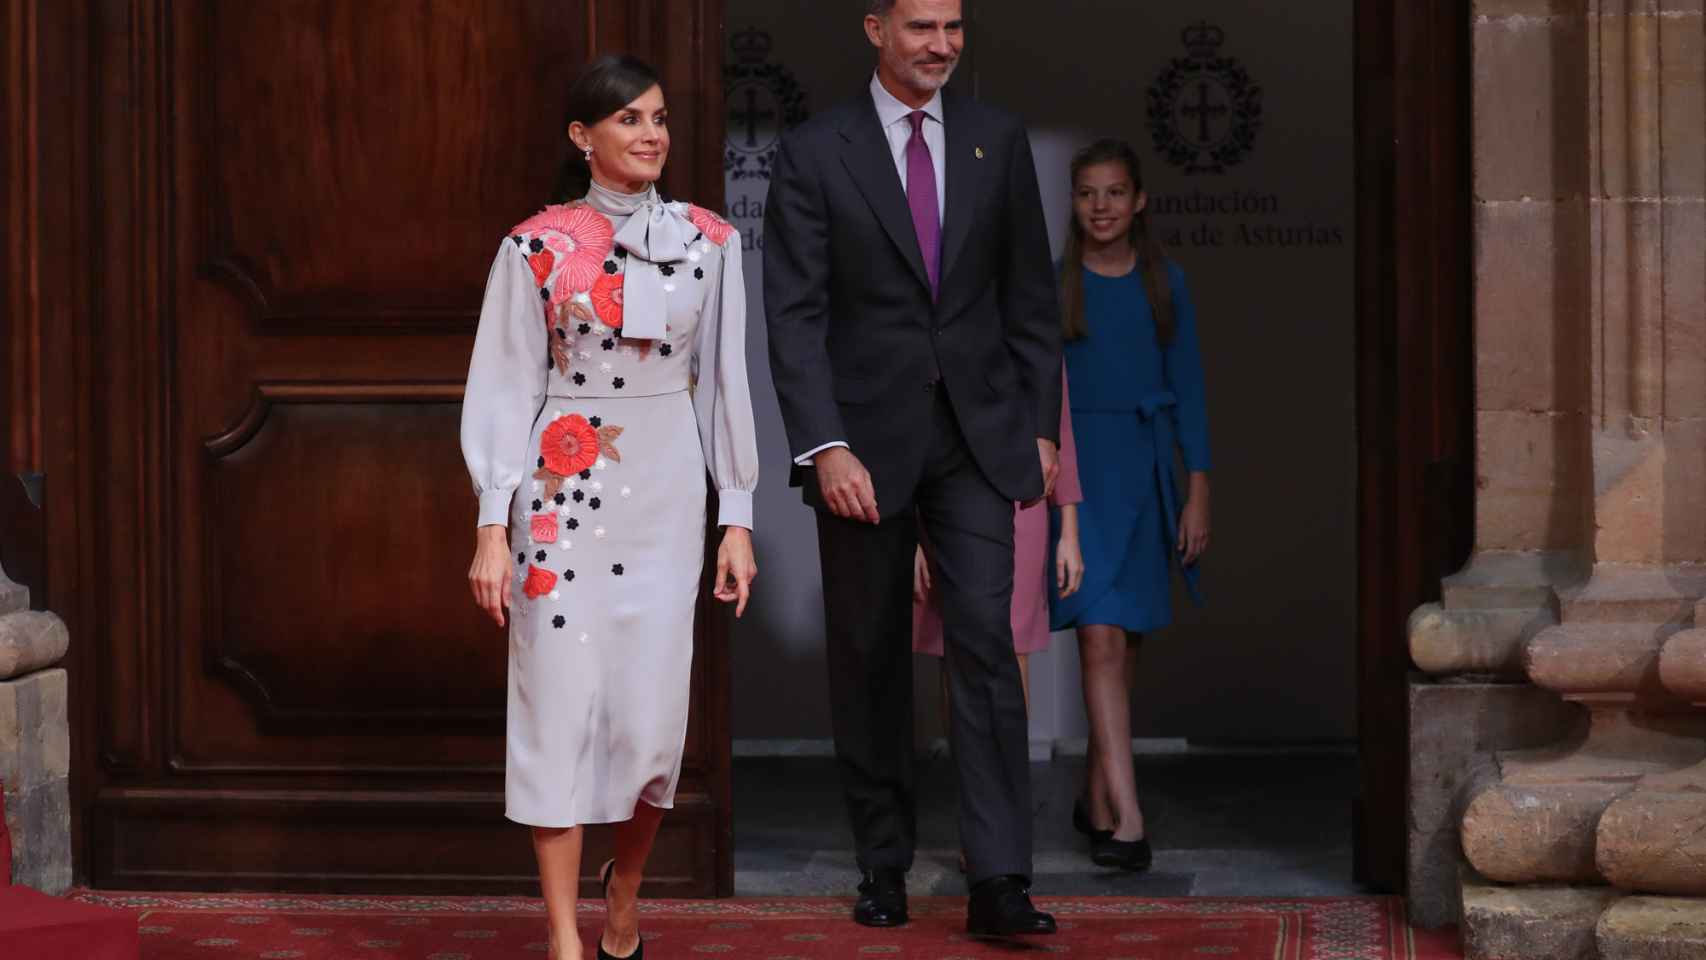 La reina Letizia en la recepción en Oviedo este viernes.